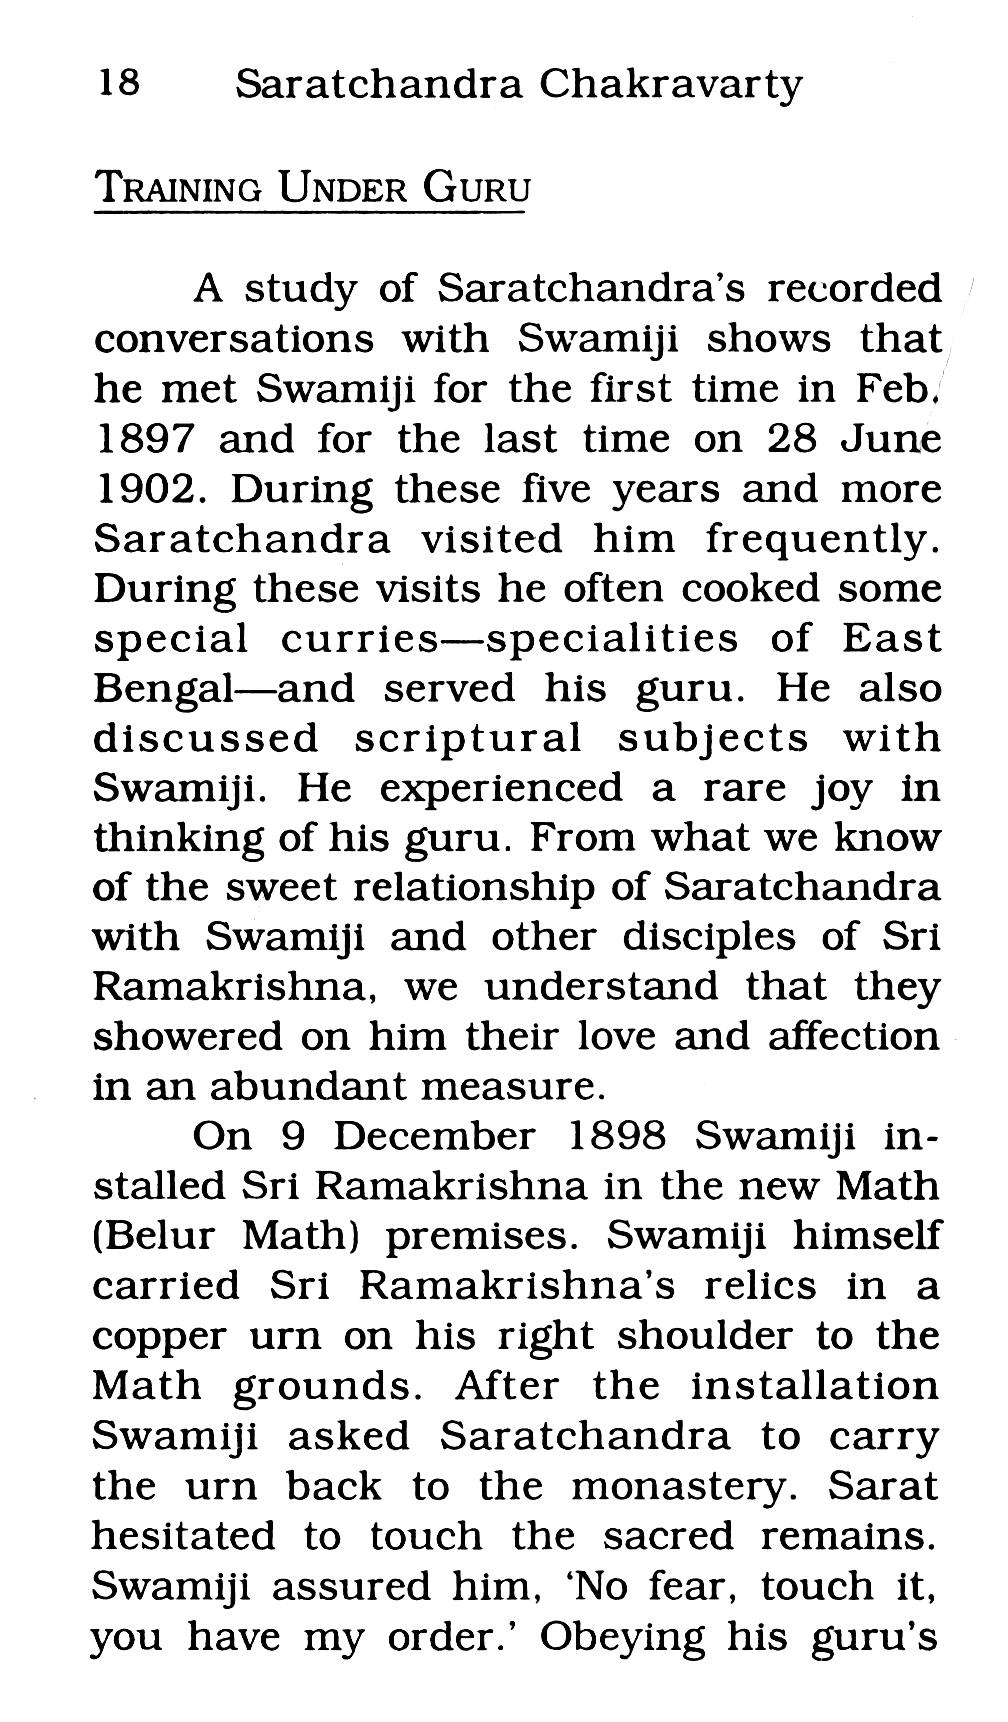 Saratchandra Chakravarty - A Disciple of Swami Vivekananda